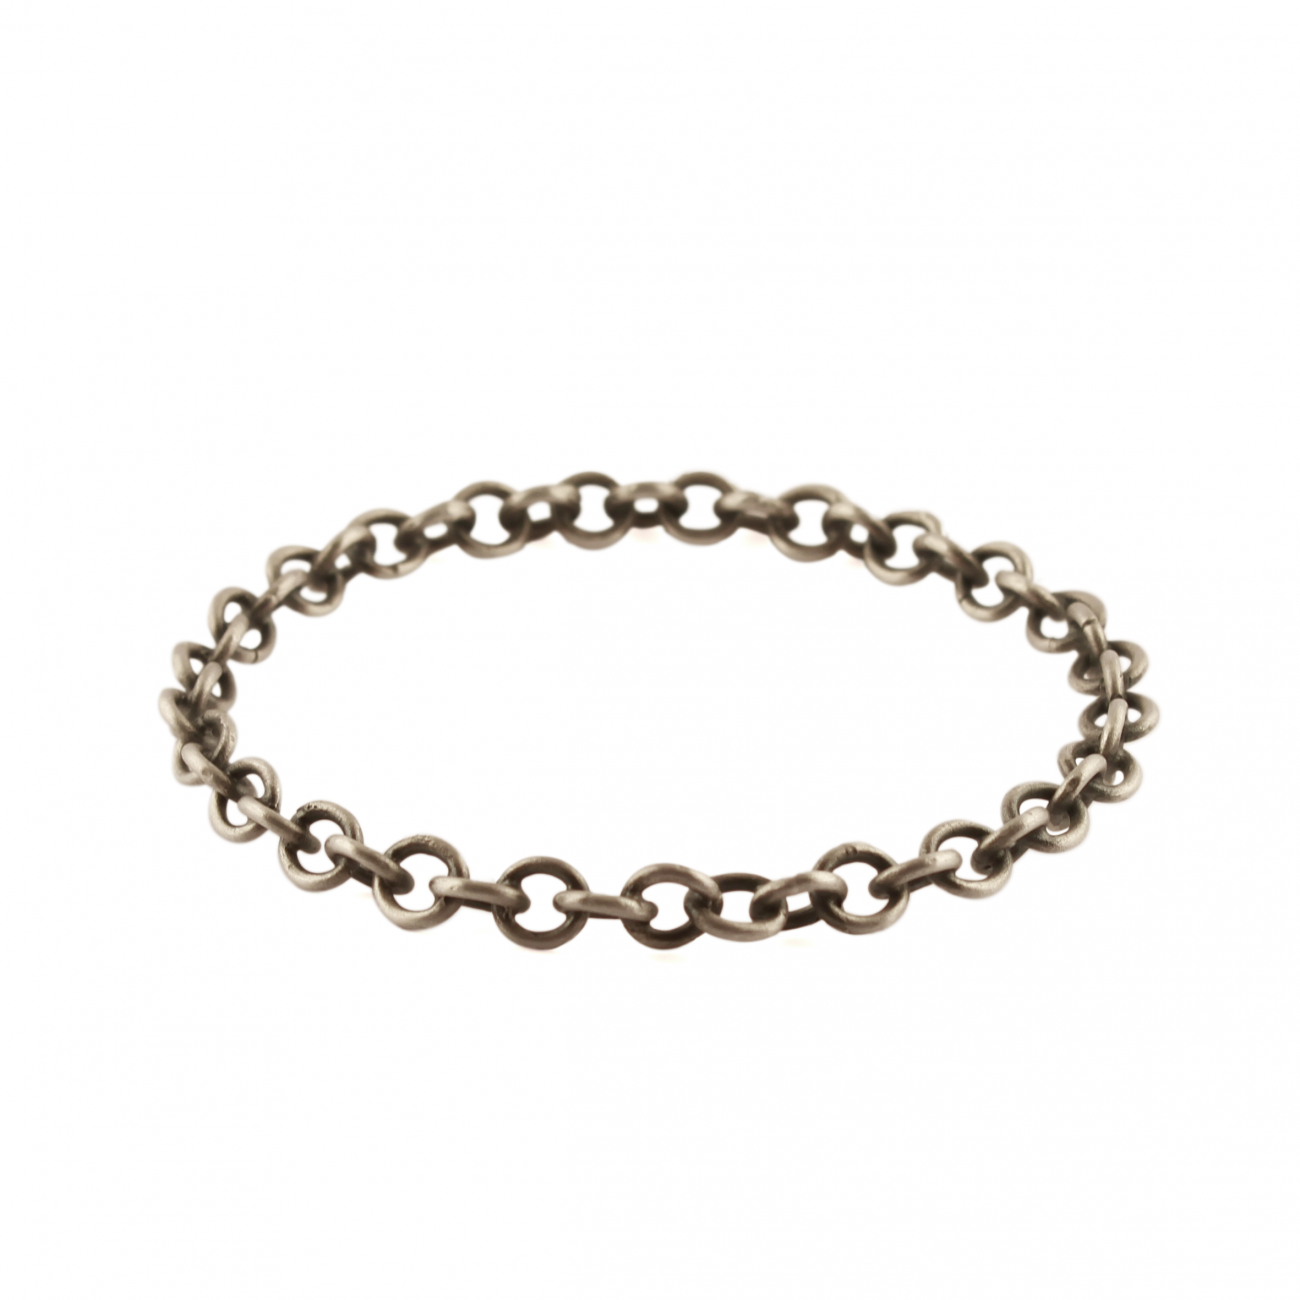 Chain-like bracelet